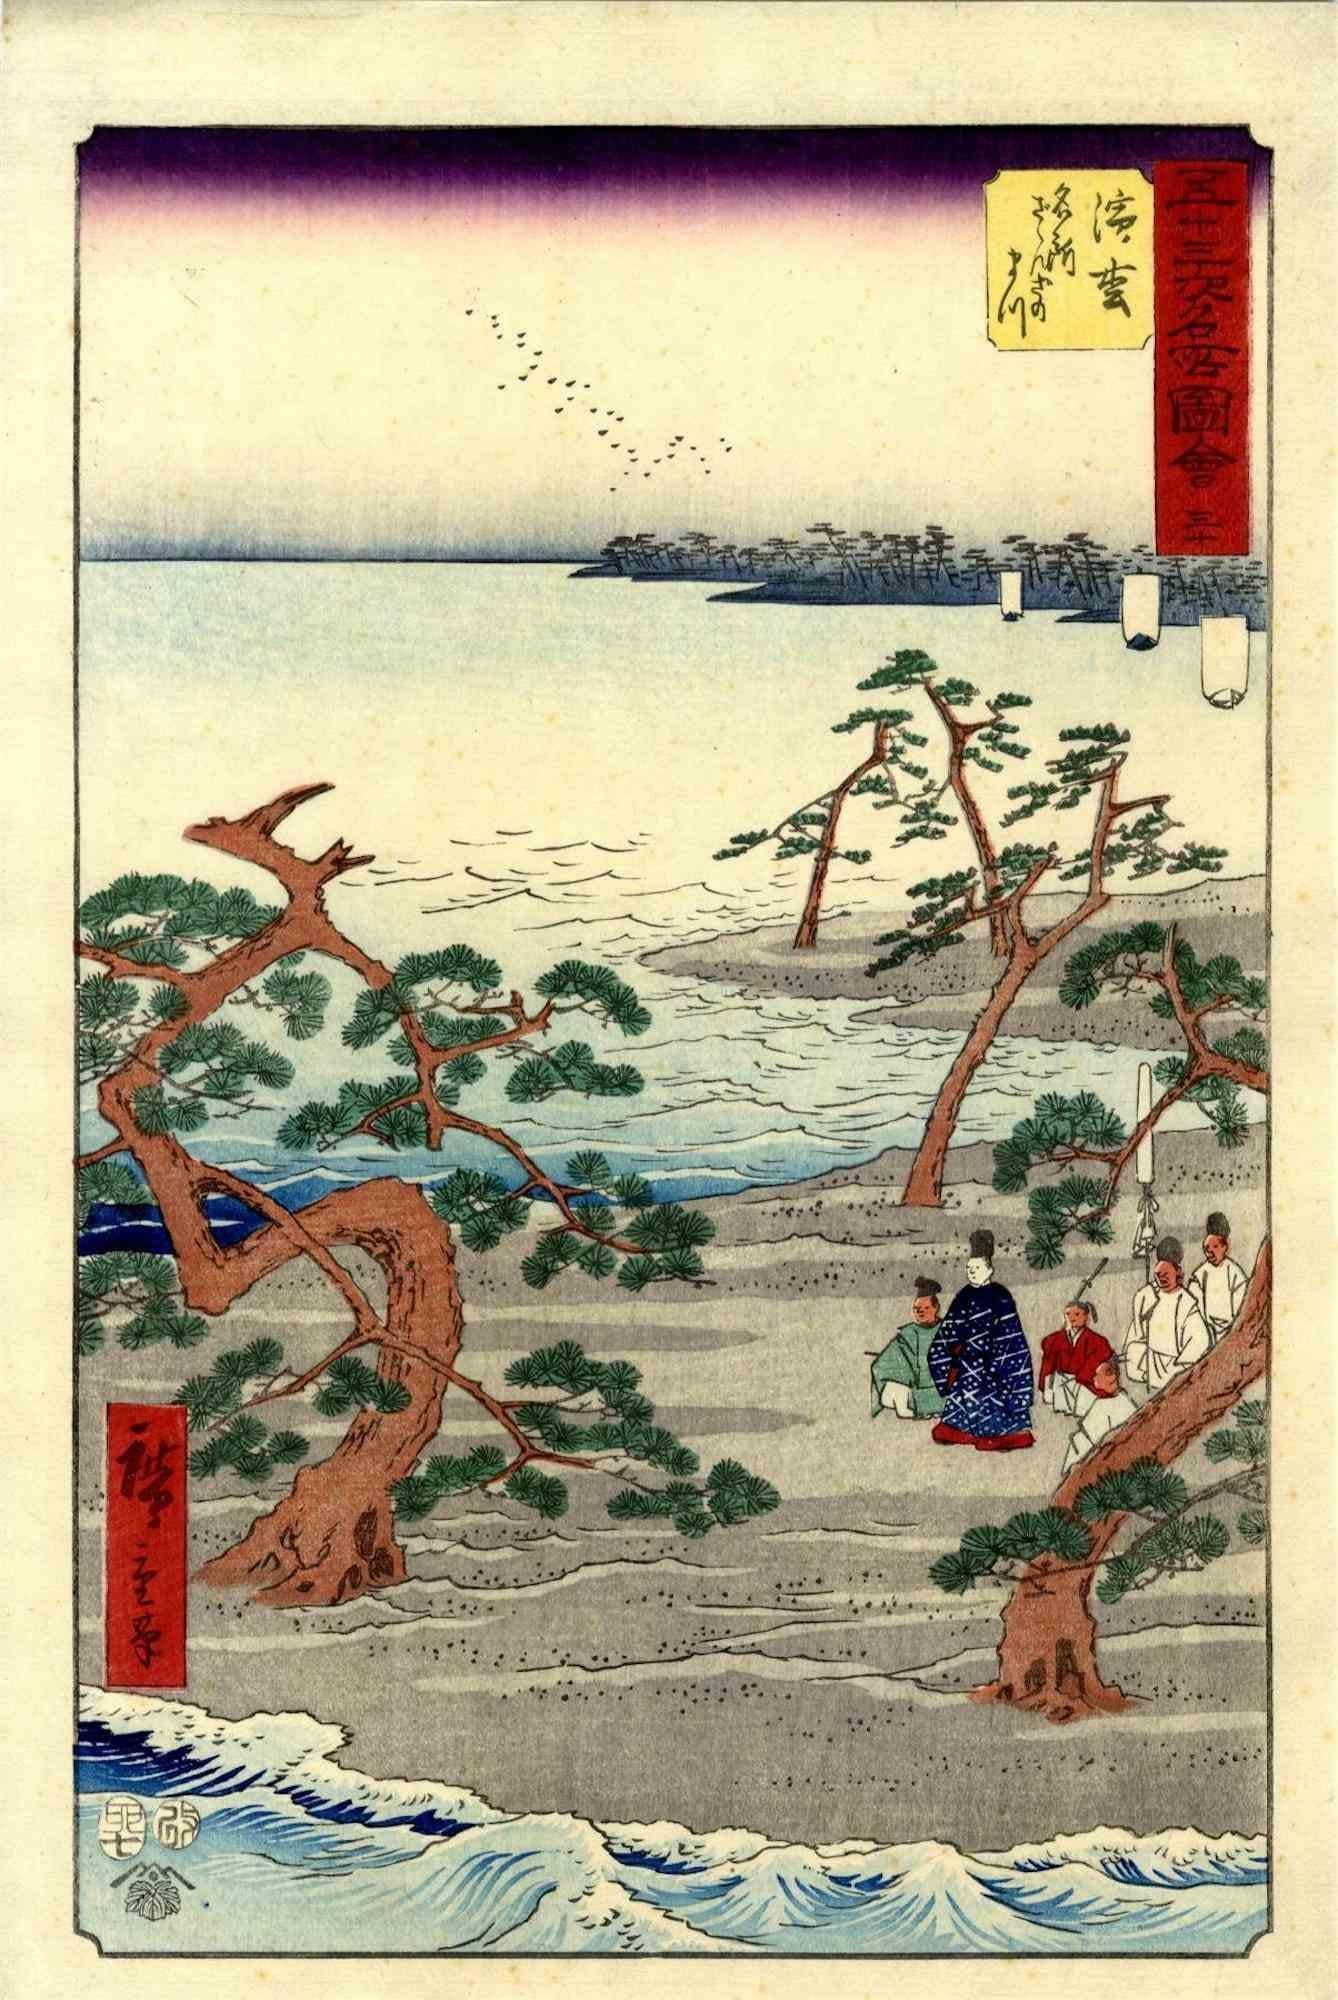 Hamamatsu - Original Woodcut by Utagawa Hiroshige -1855